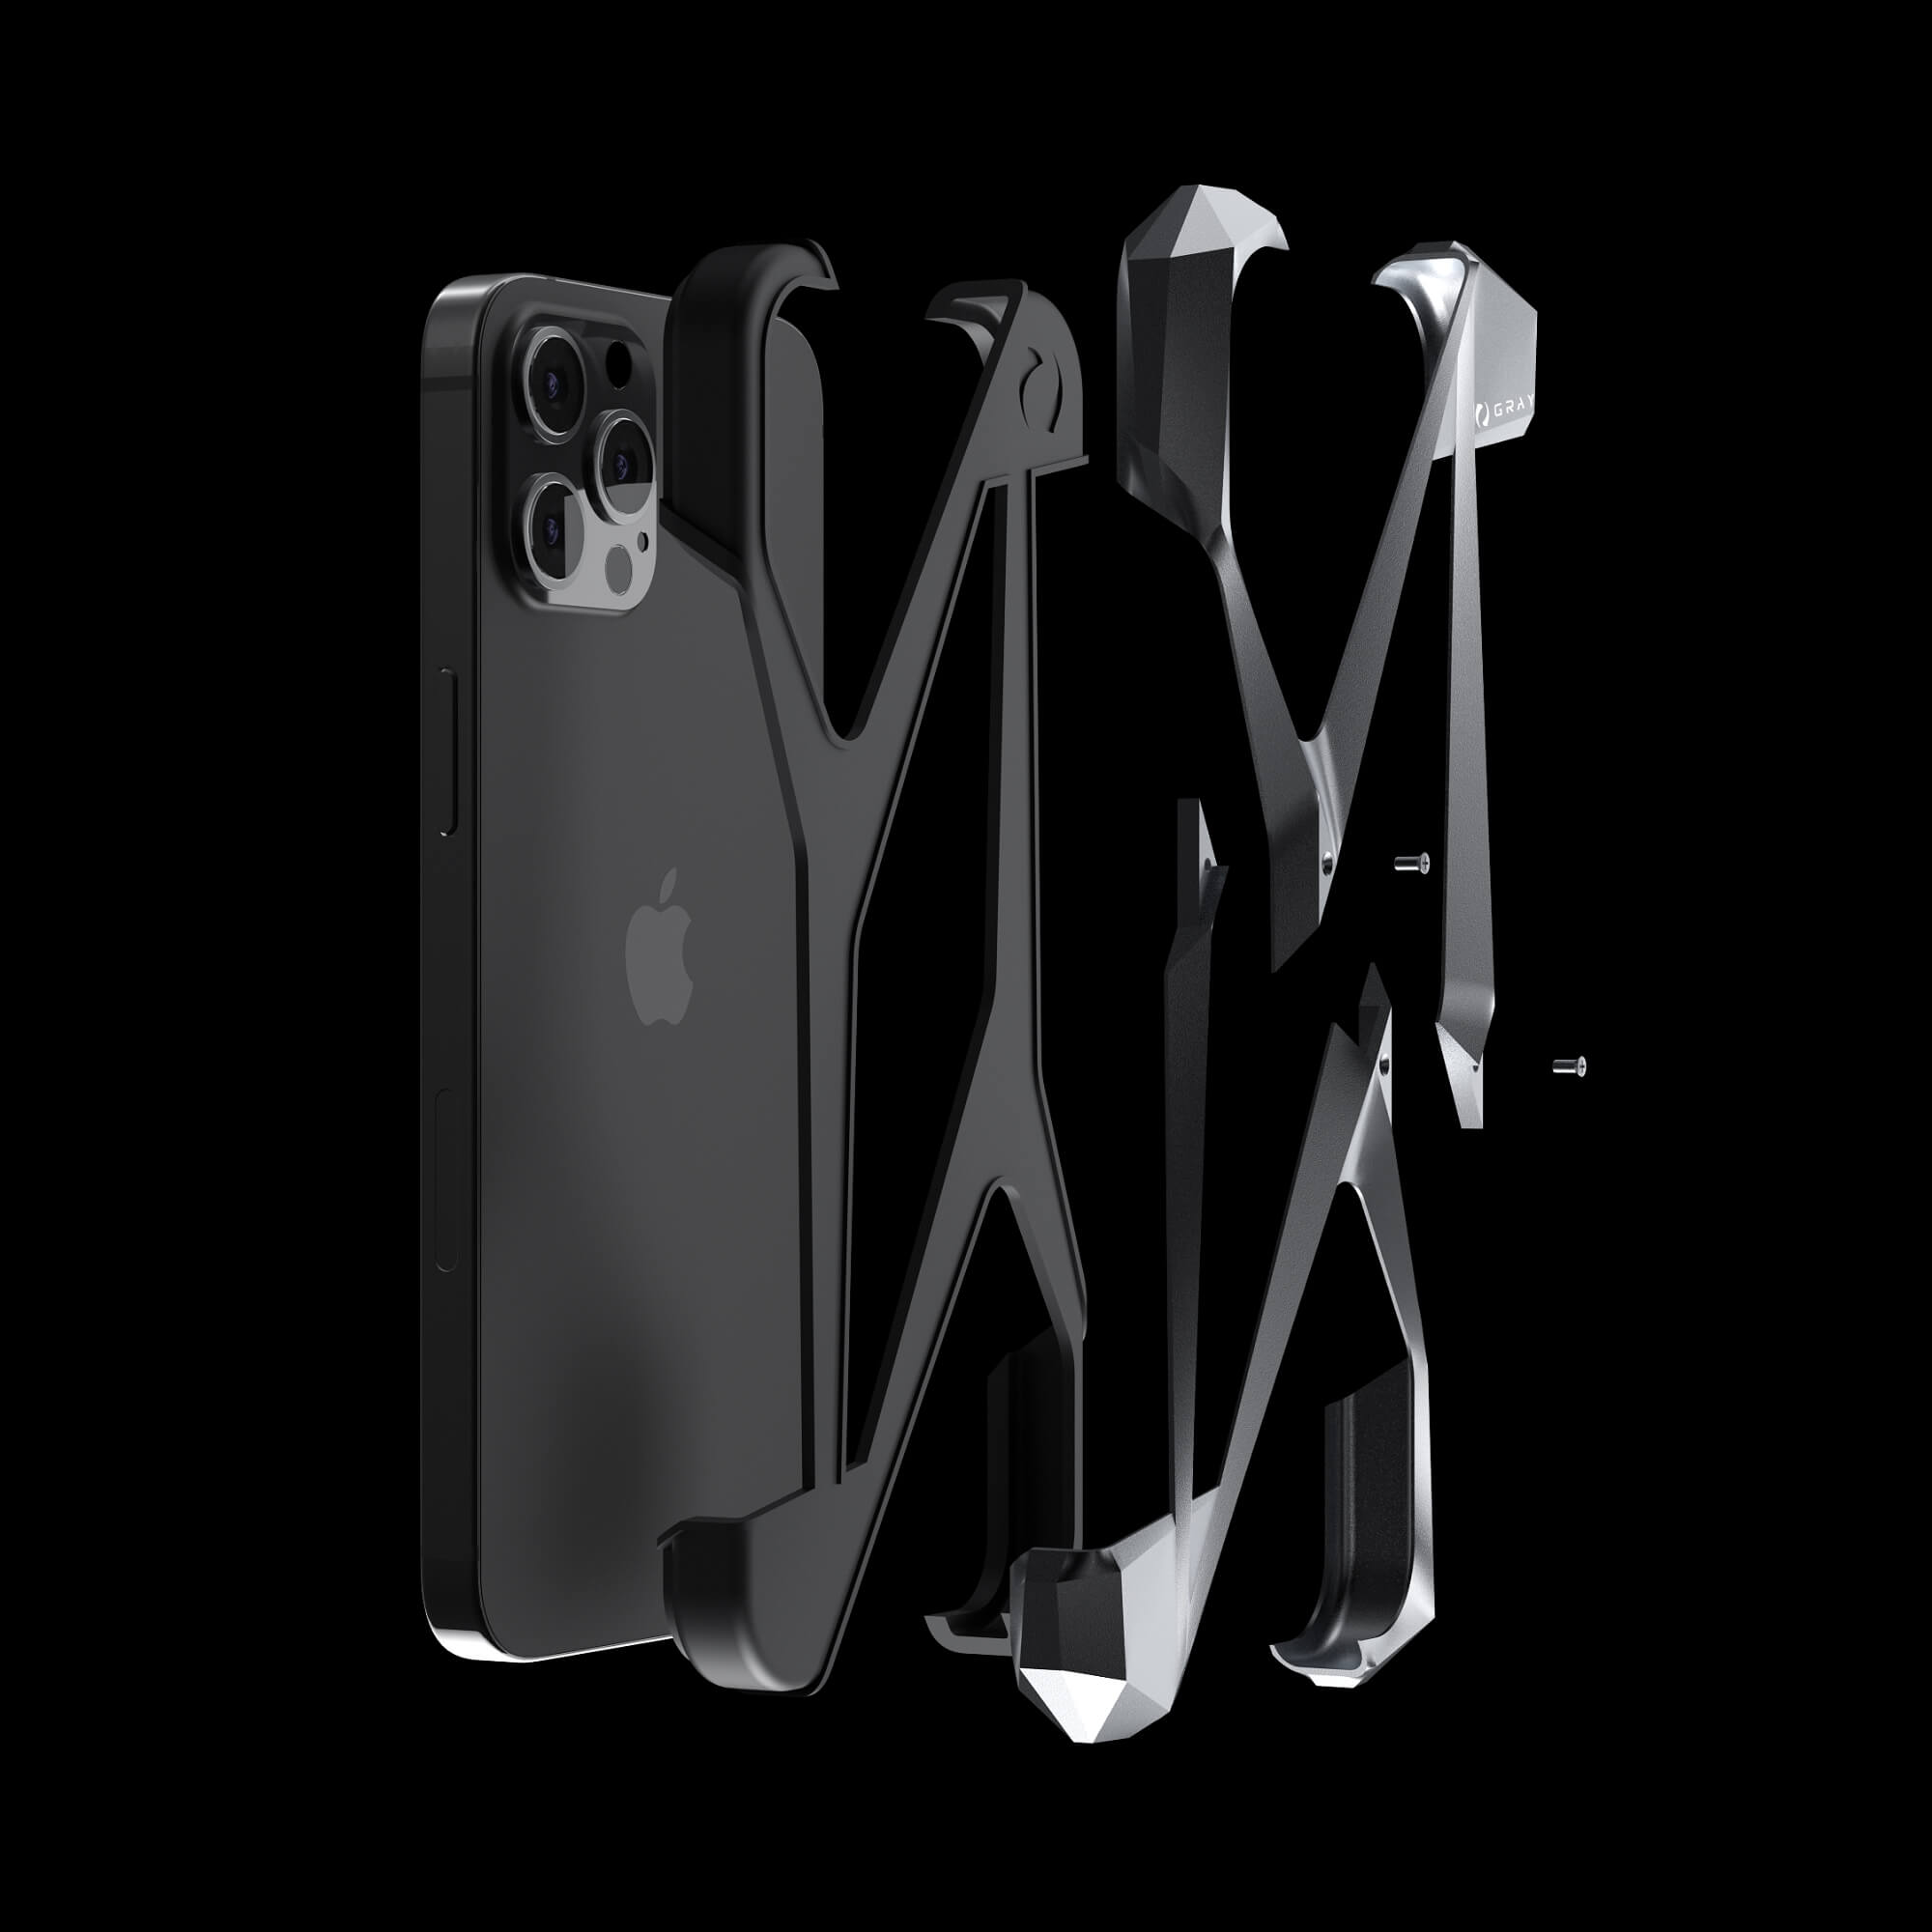 alter ego space gray aluminium metal luxury iPhone 12 pro case